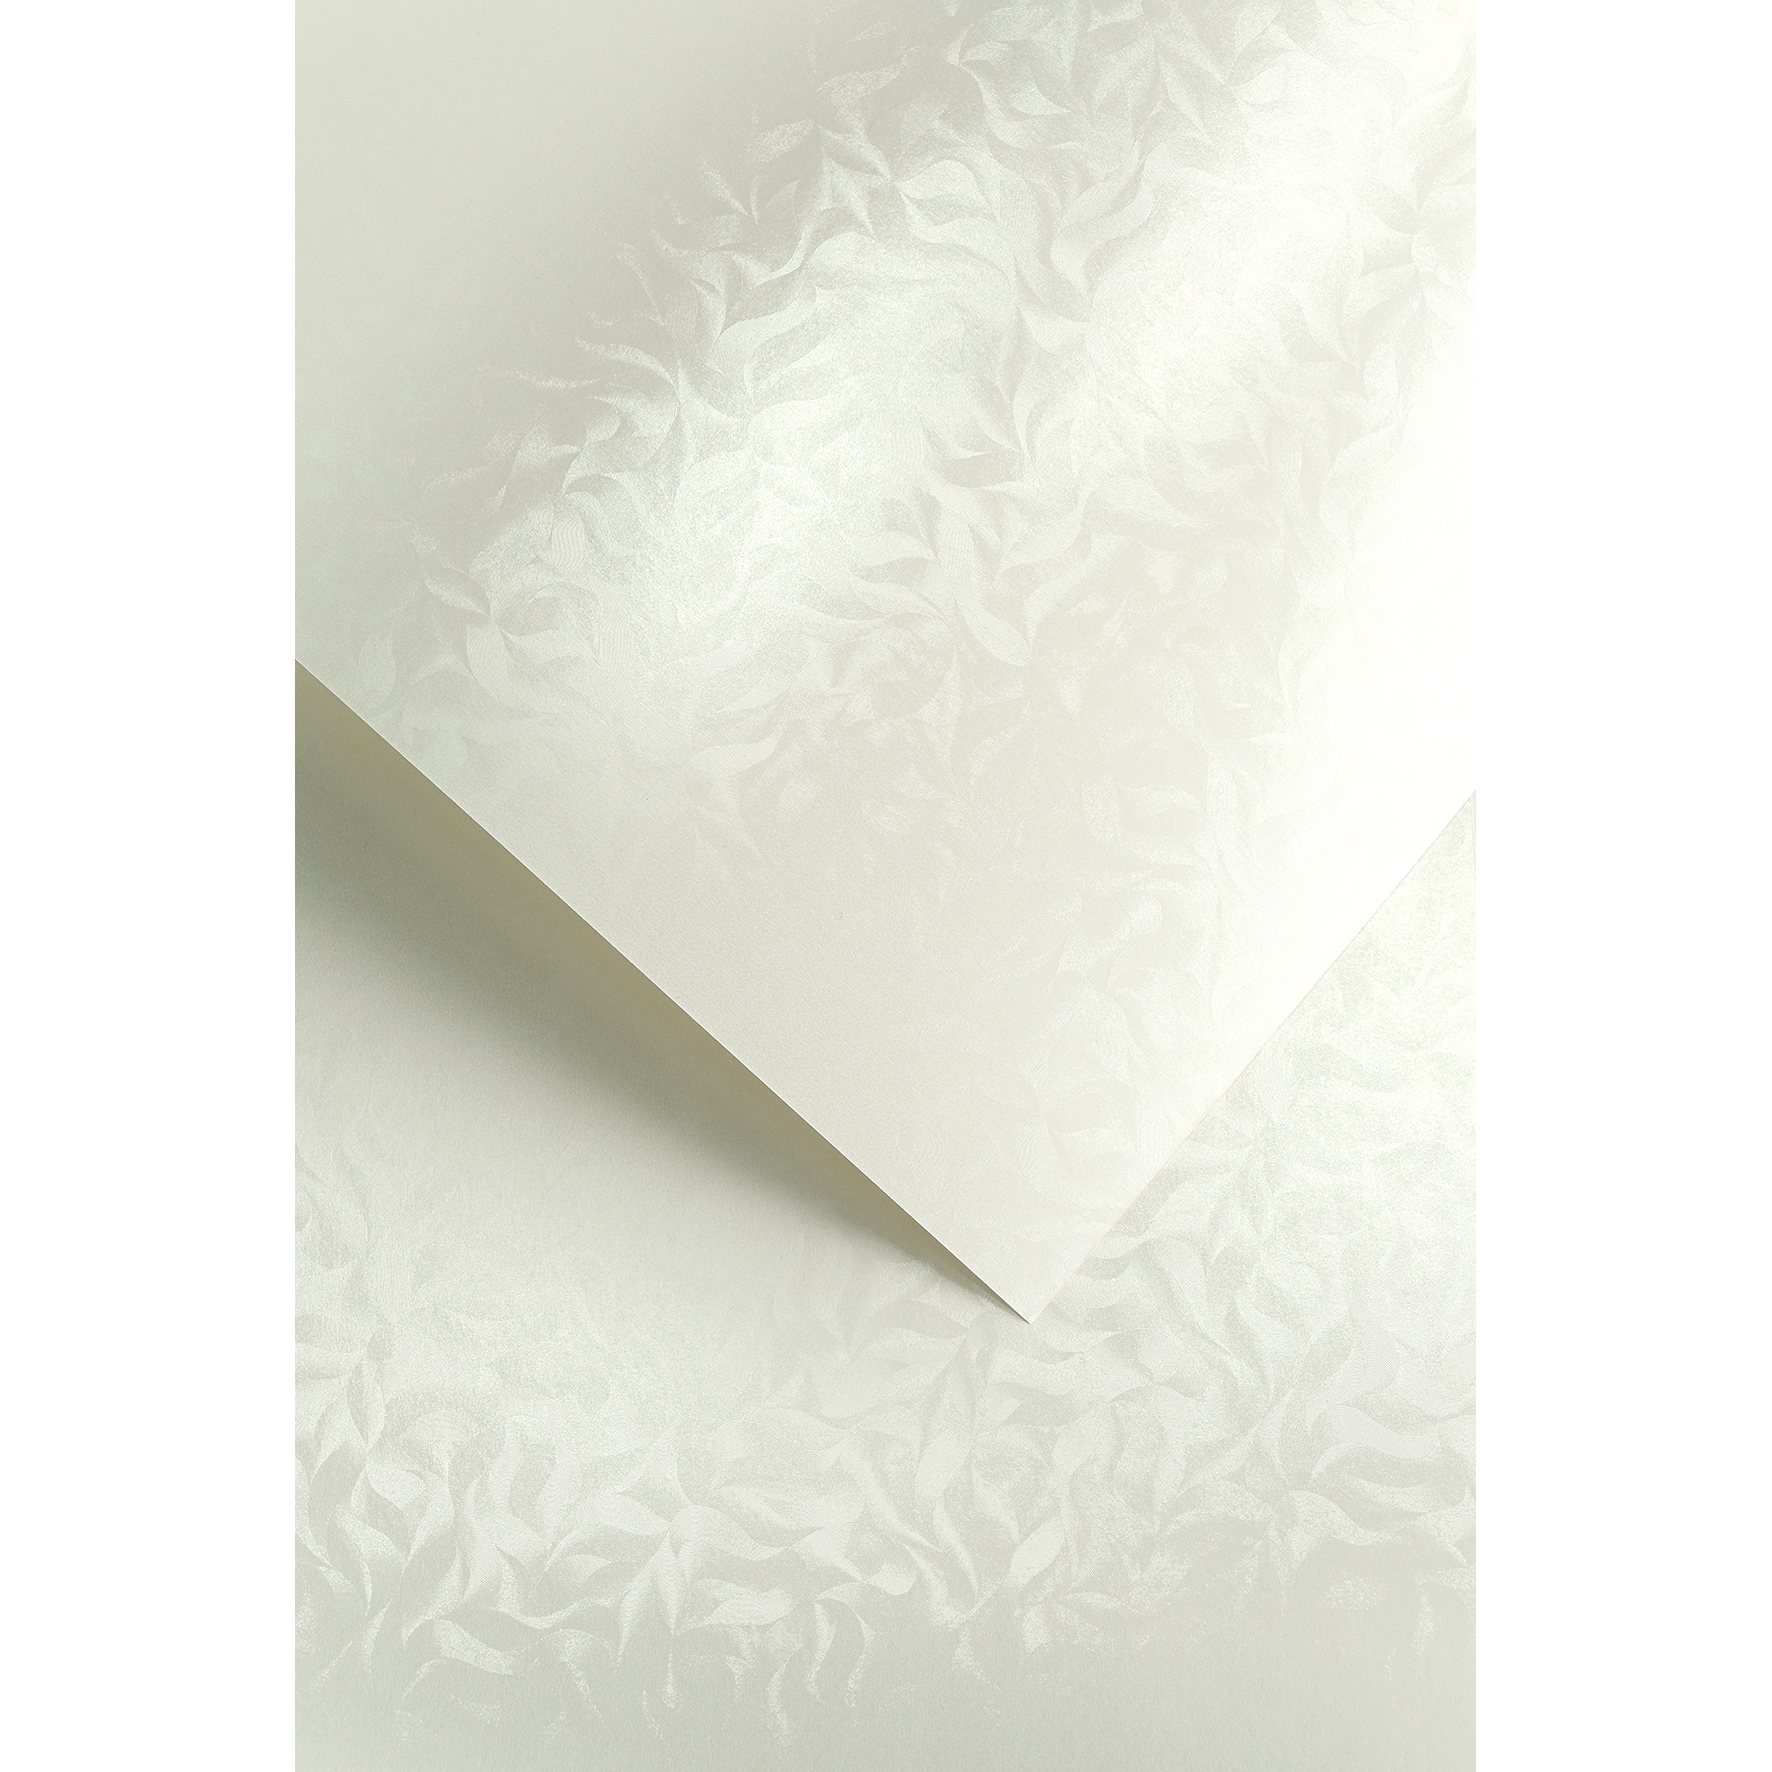 Ozdobný papír Olympia, bílý, 220g, 20ks